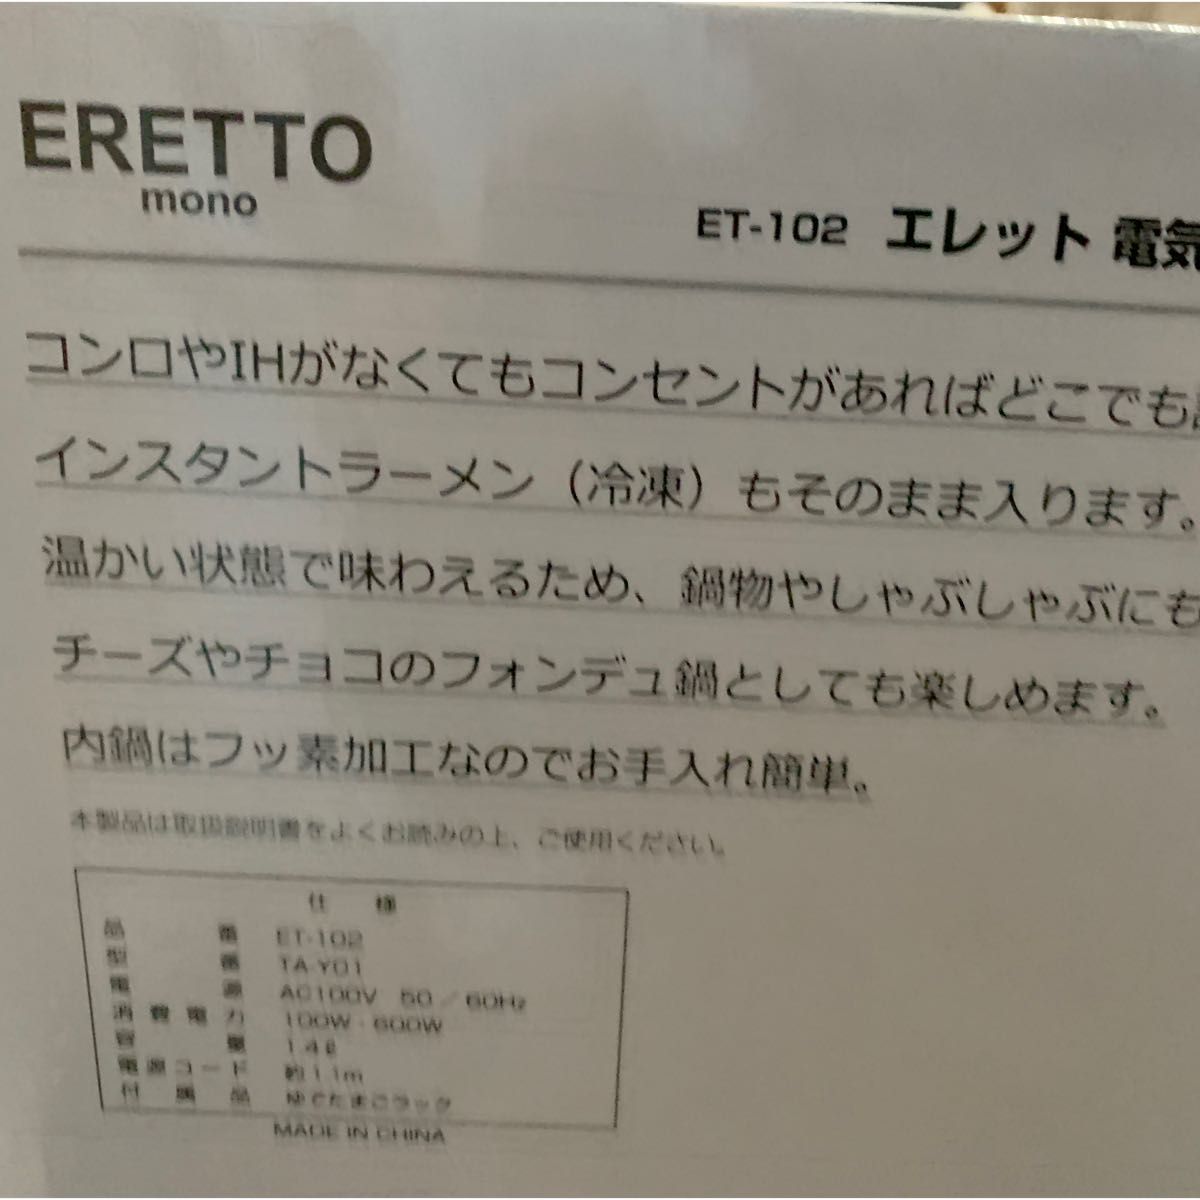 新品 未使用 未開封 ERETTO  mono  電気片手鍋 16cm ET-102 タマハシ